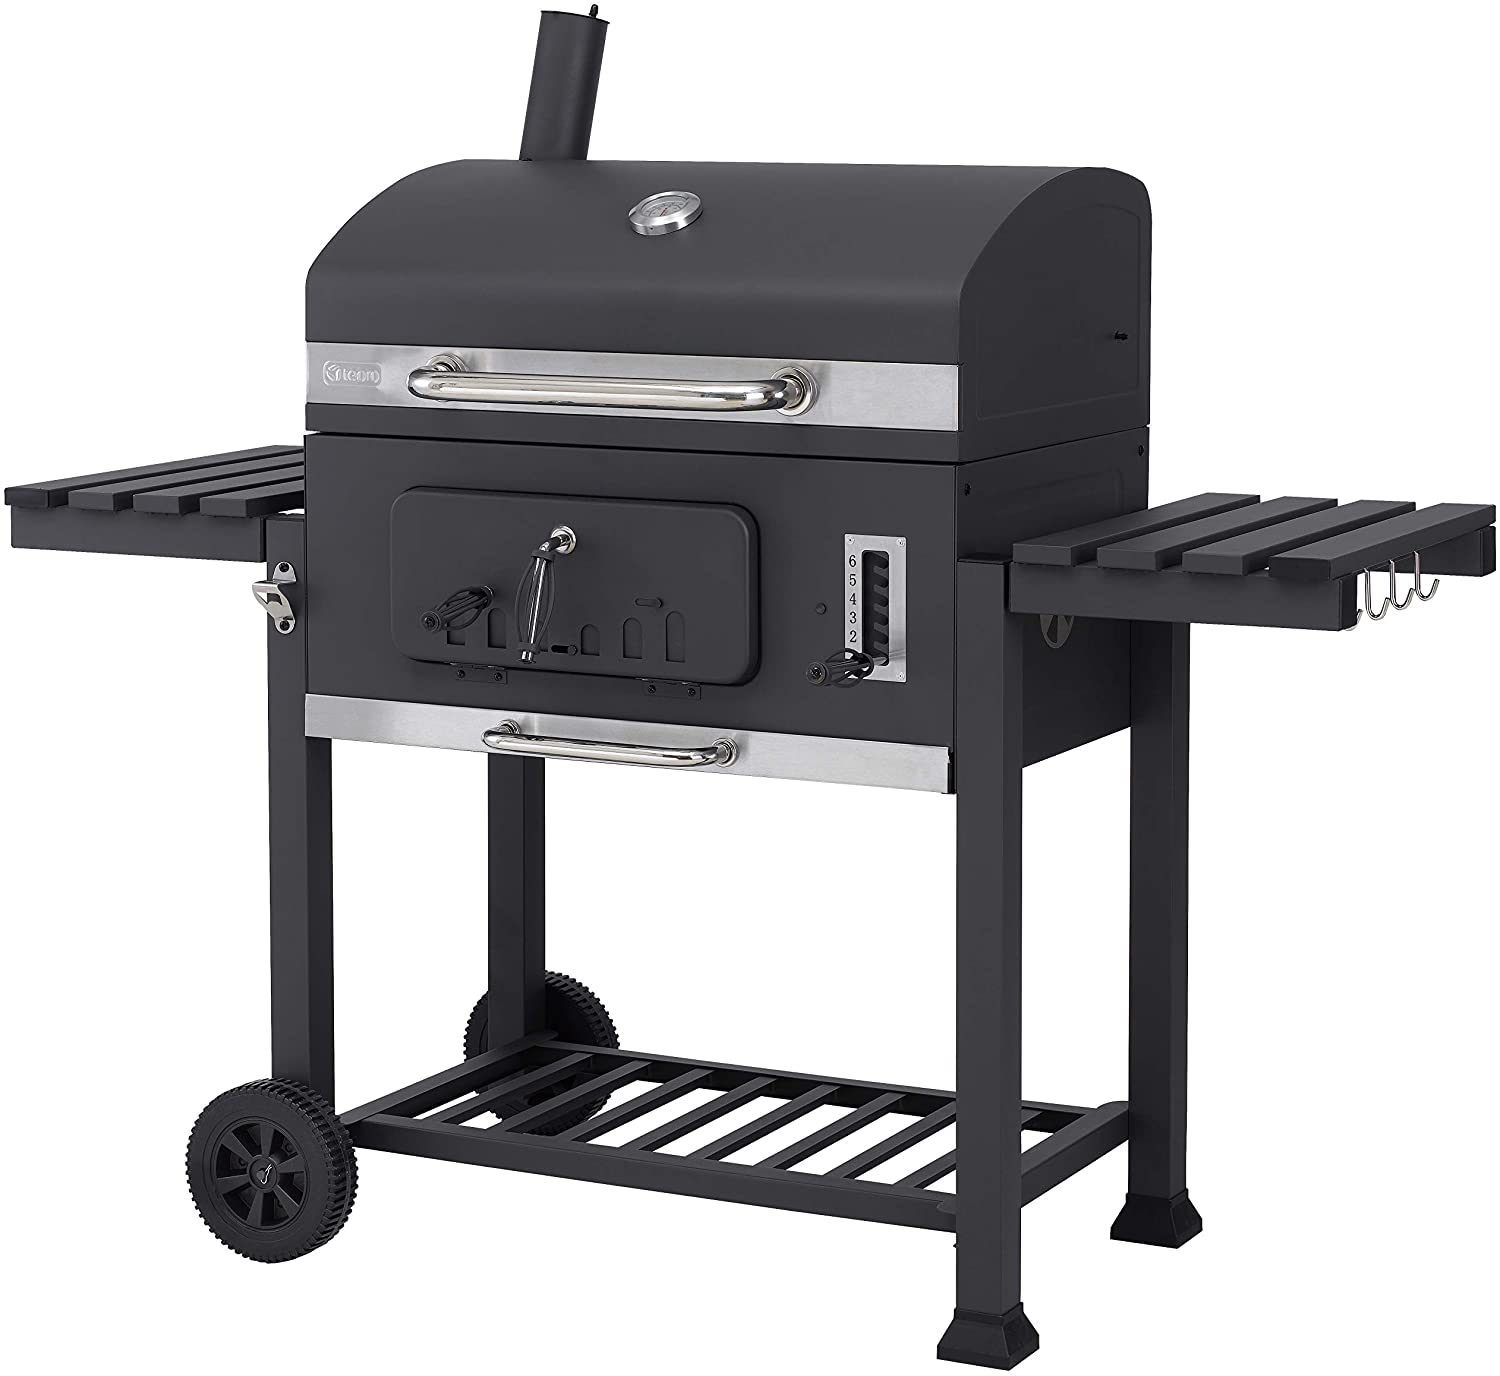 Tepro Toronto XXL 2019 Carrello per barbecue in acciaio INOX colore Antracite 🥓 Barbecue a Carbonella🍗 Ricetta salmone alla griglia